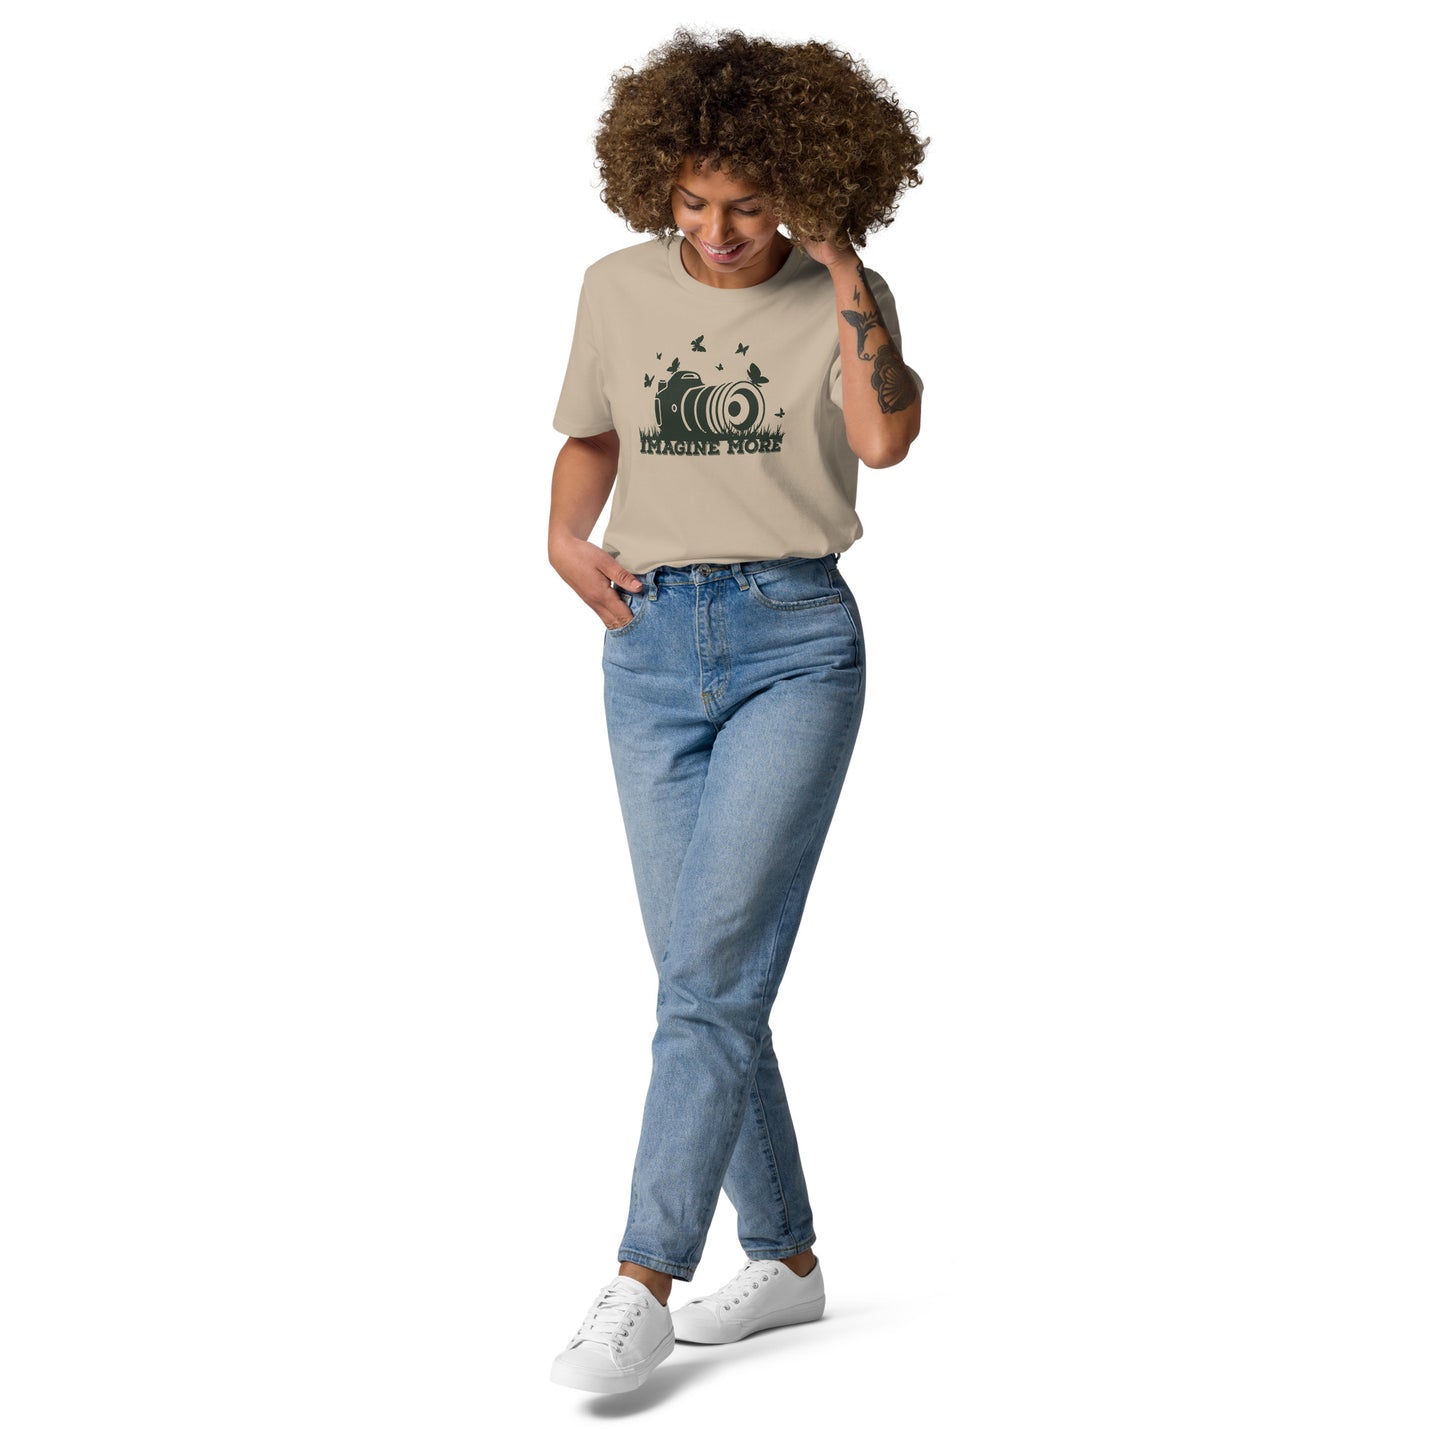 Imagine More Unisex organic cotton t-shirt - HobbyMeFree